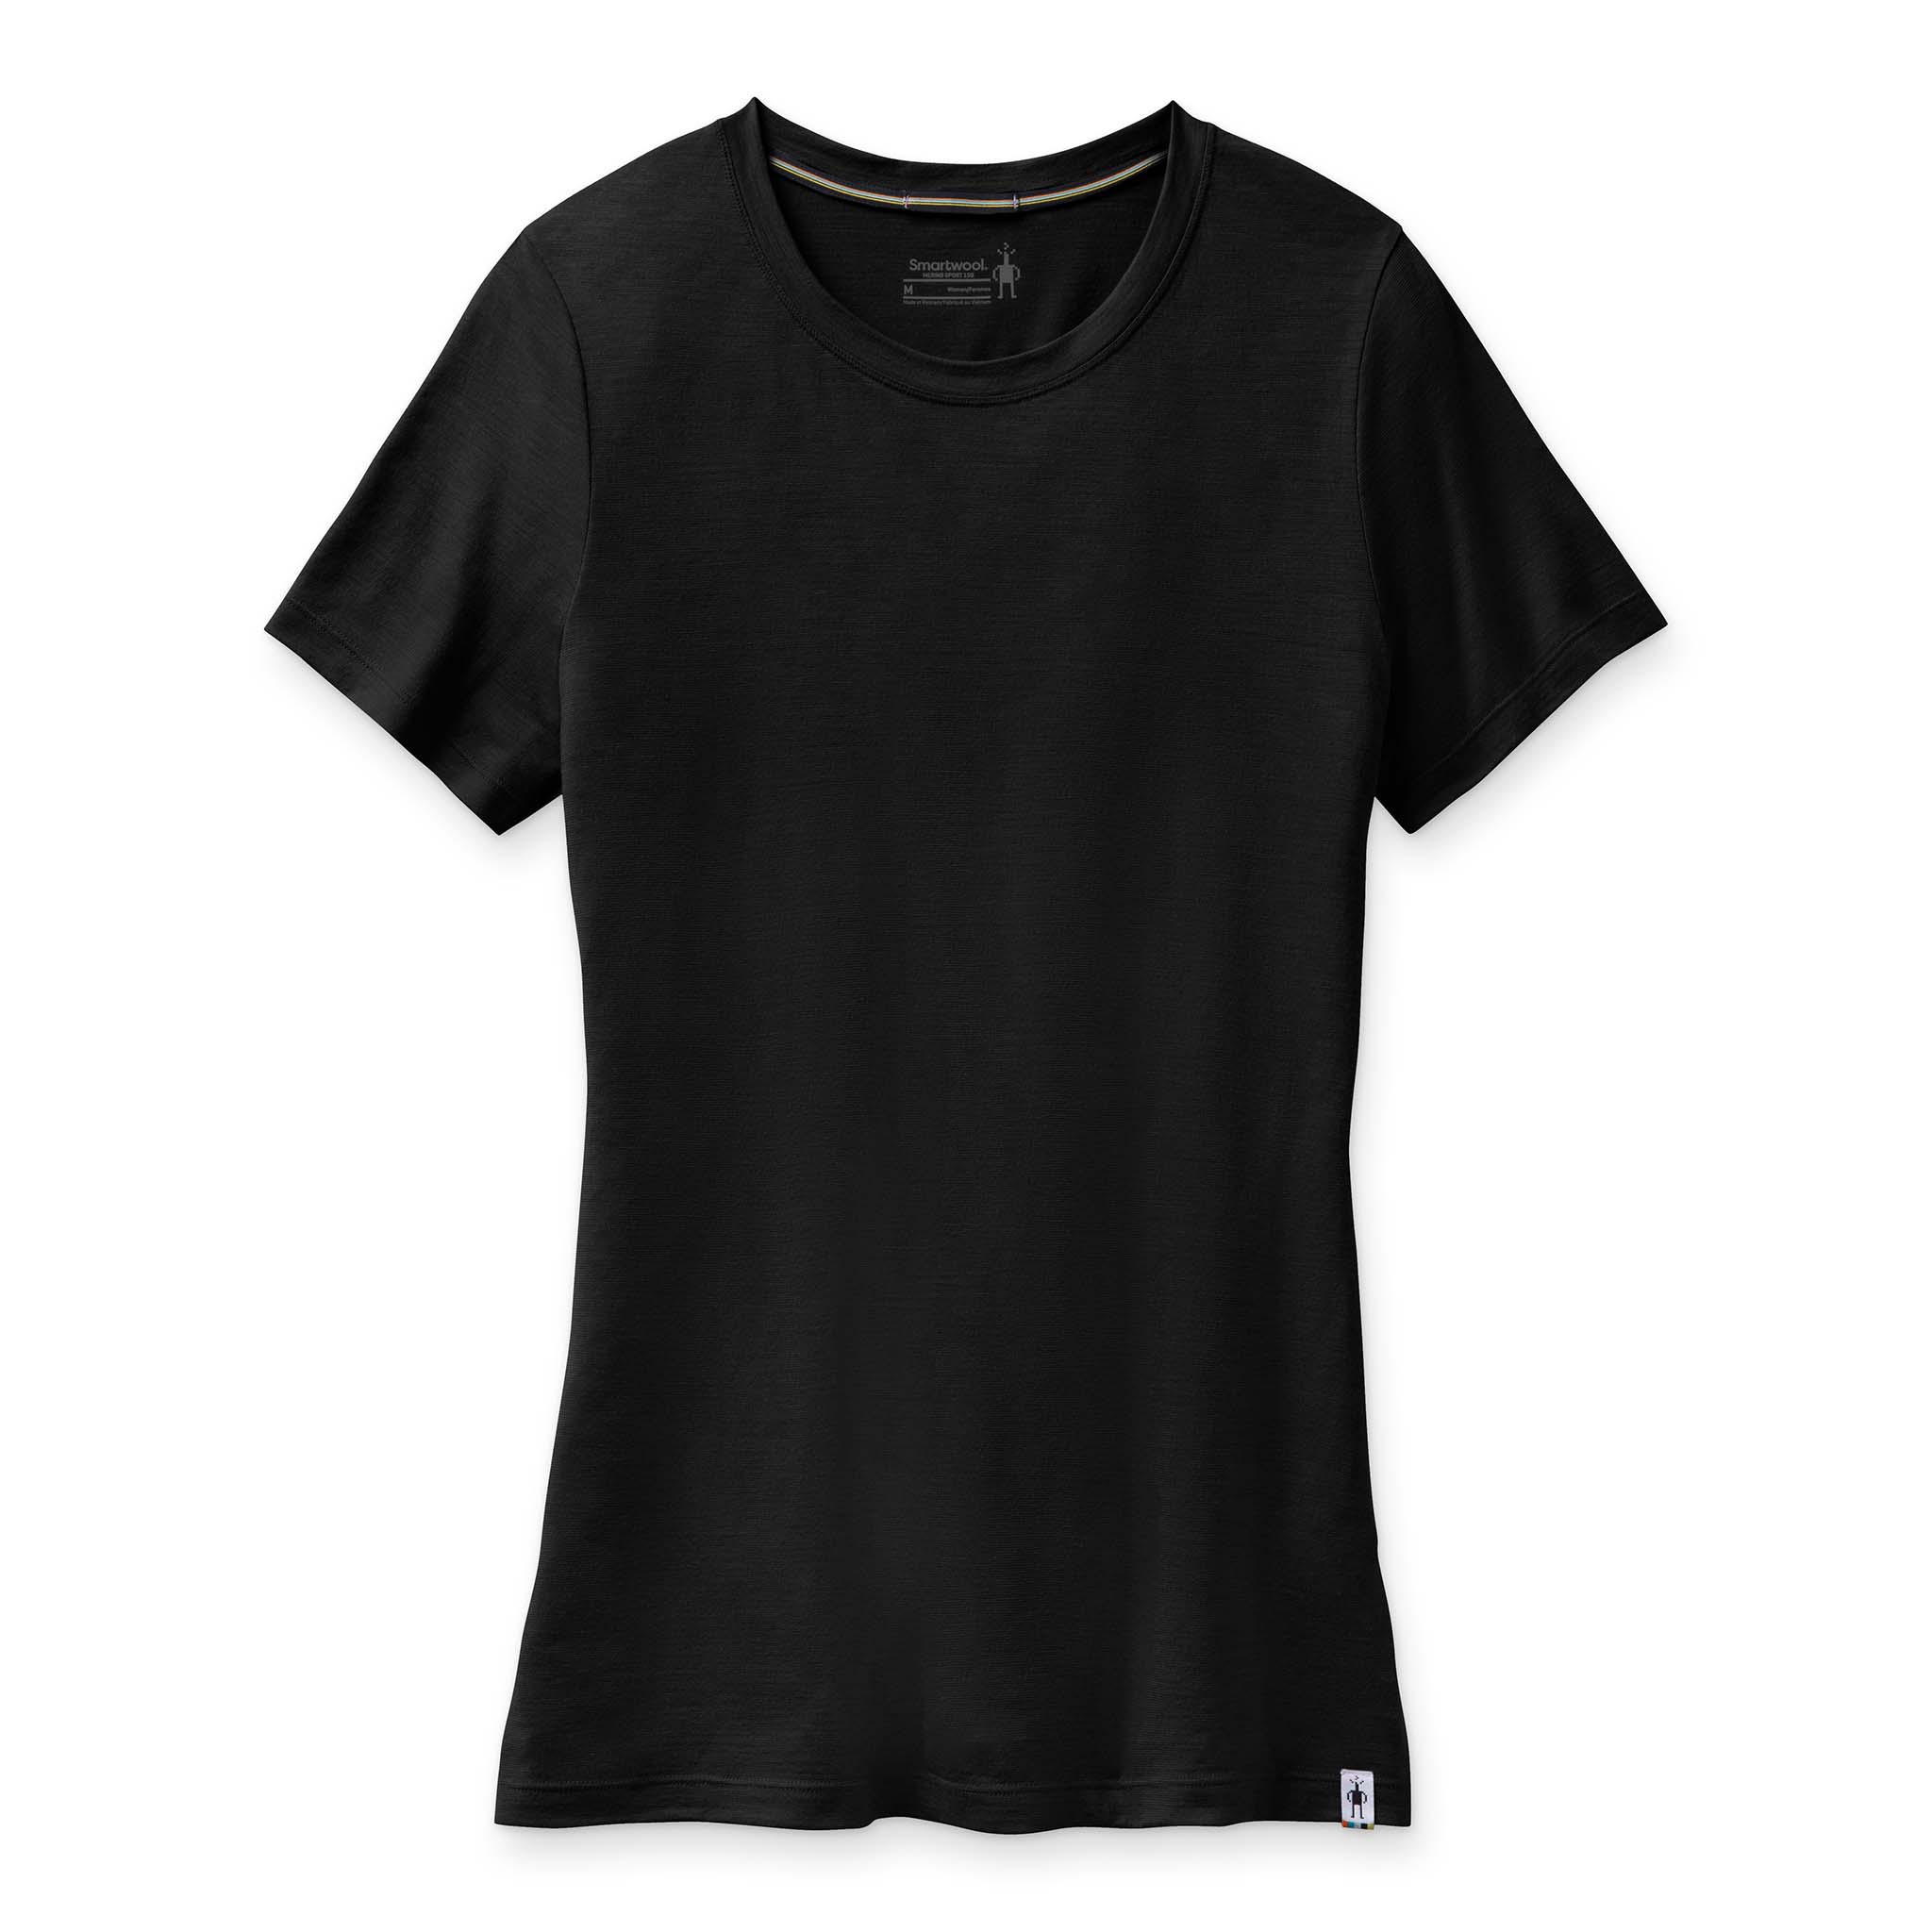 Smartwool Women's Merino Sport 150 Short Sleeve T-Shirt - Soccer Sport  Fitness